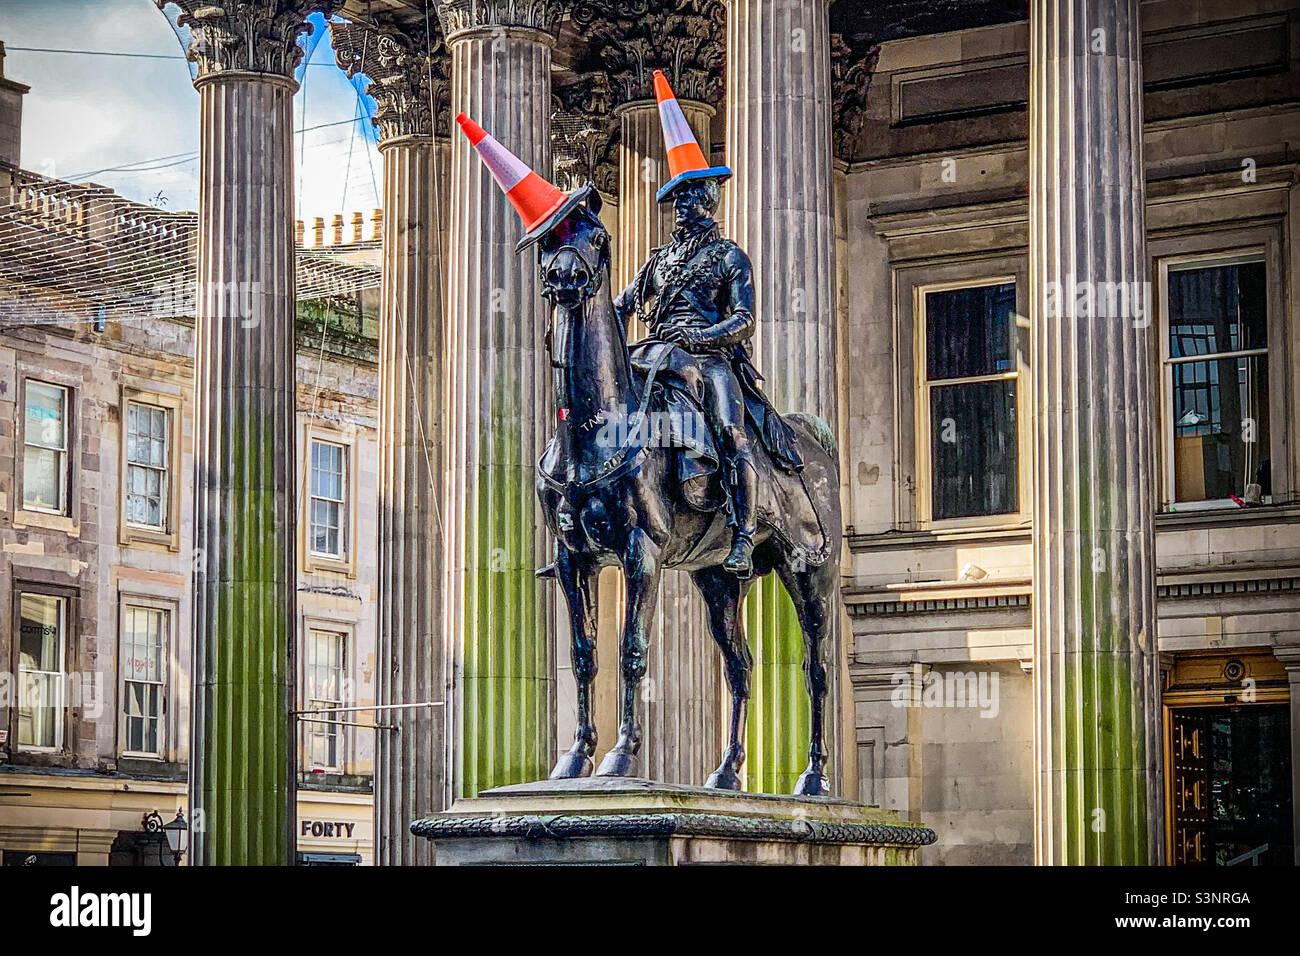 Statue équestre d'Arthur Wellesley, 1st duc de Wellington portant un cône de circulation sur sa tête, à l'extérieur de la Galerie d'art moderne de Glasgow, en Écosse Banque D'Images